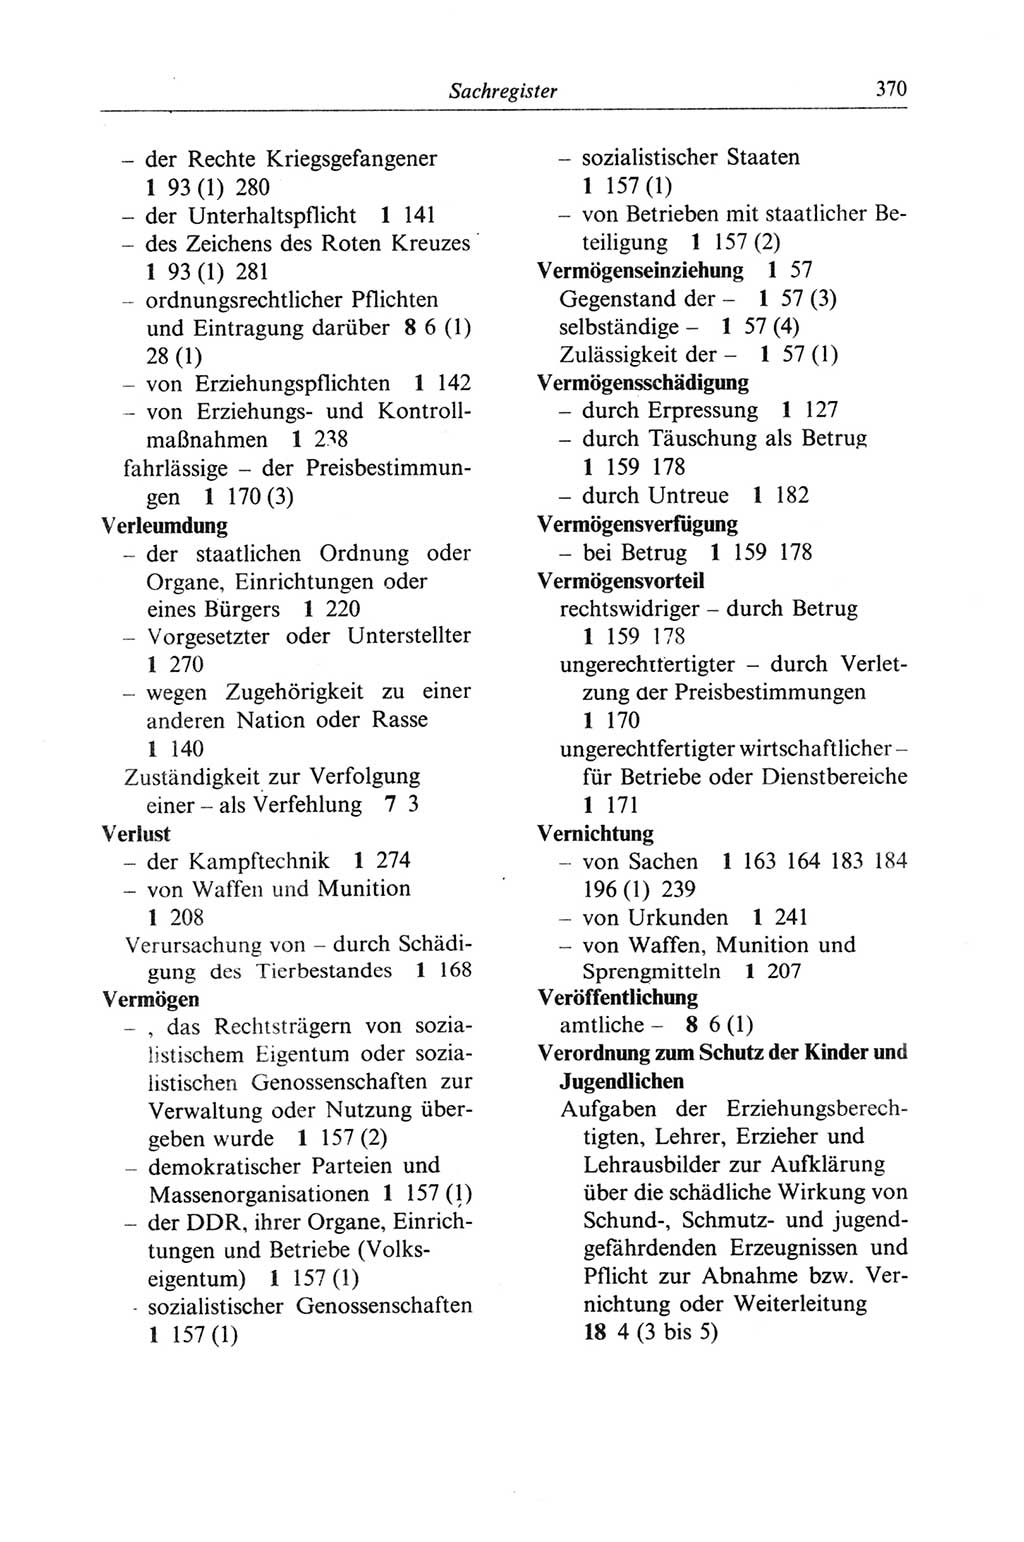 Strafgesetzbuch (StGB) der Deutschen Demokratischen Republik (DDR) und angrenzende Gesetze und Bestimmungen 1968, Seite 370 (StGB Ges. Best. DDR 1968, S. 370)